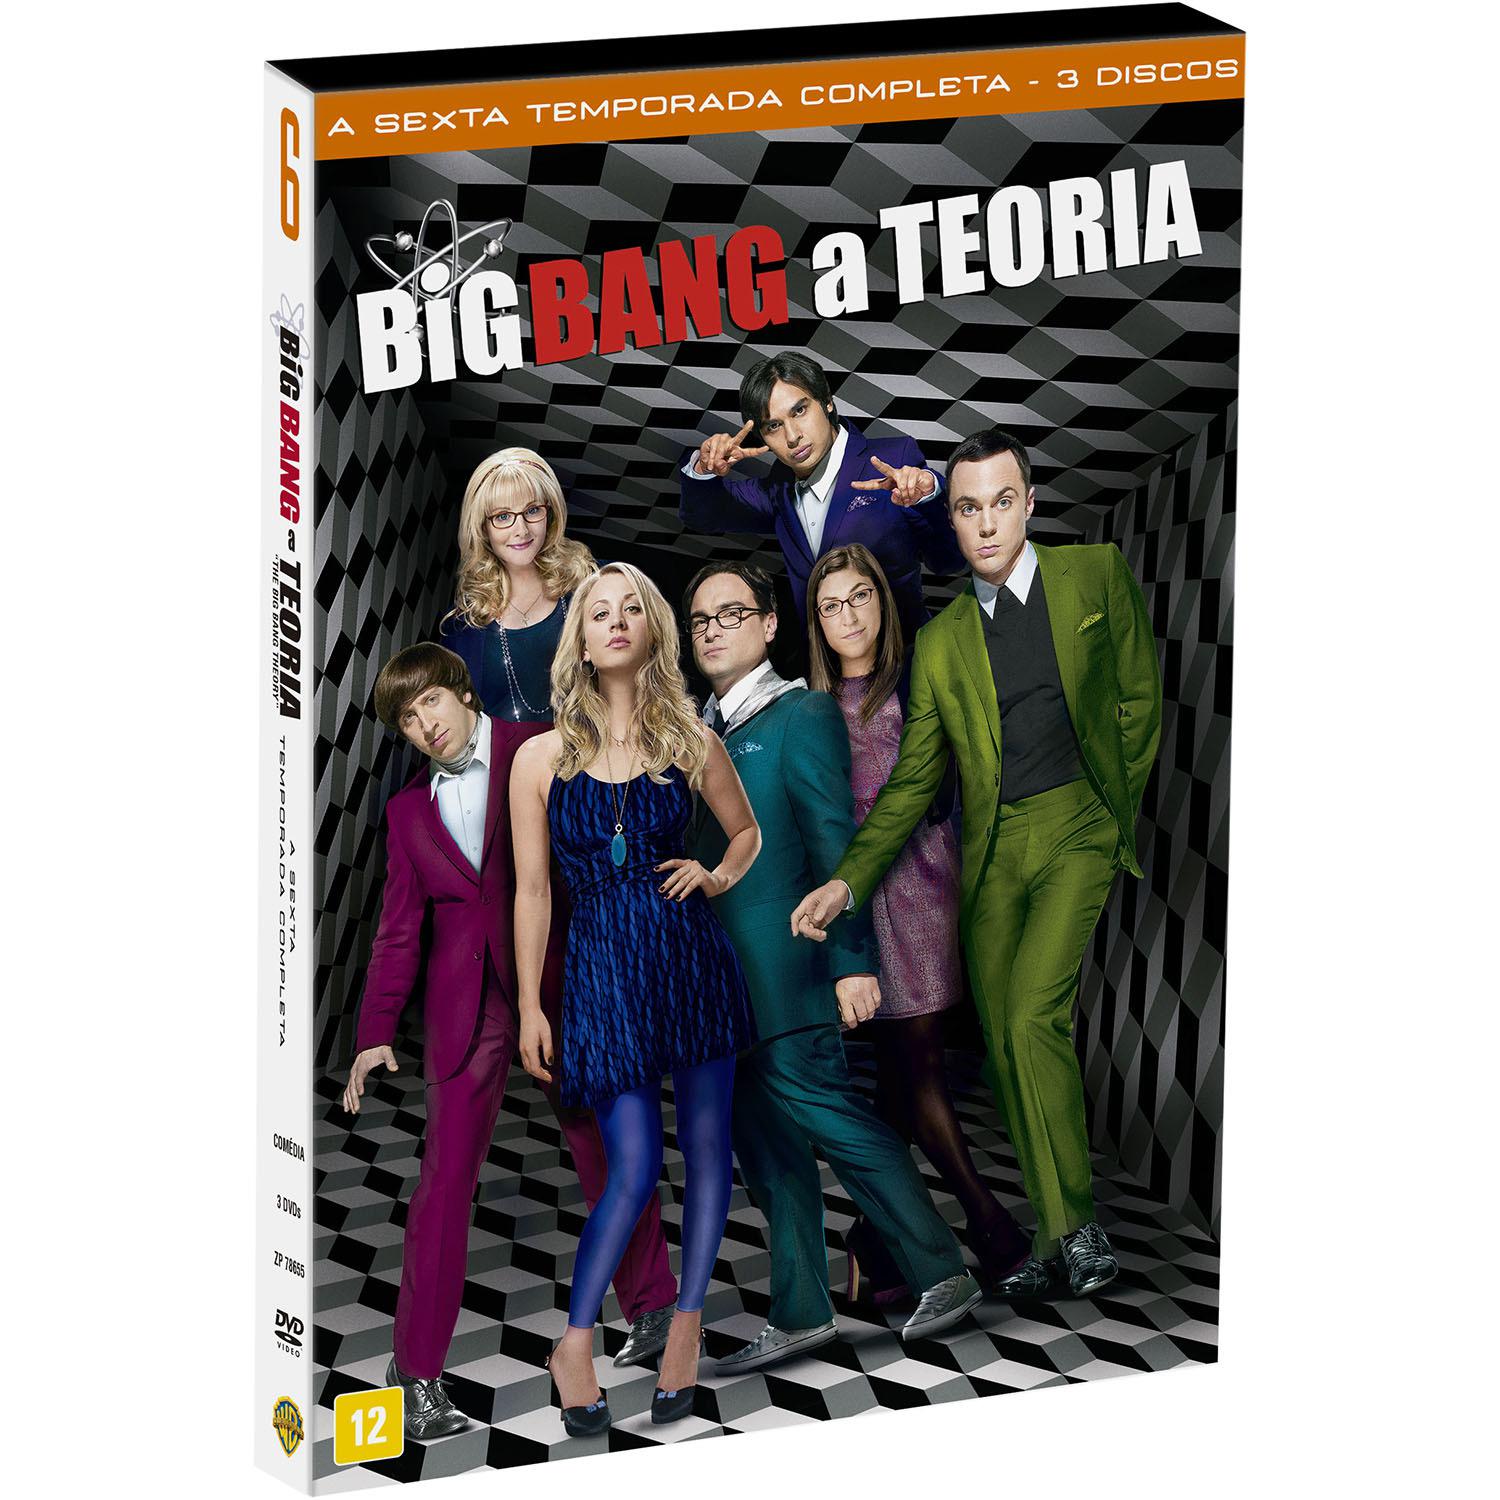 DVD - Big Bang a Teoria - A Sexta Temporada Completa (3 Discos) é bom? Vale a pena?